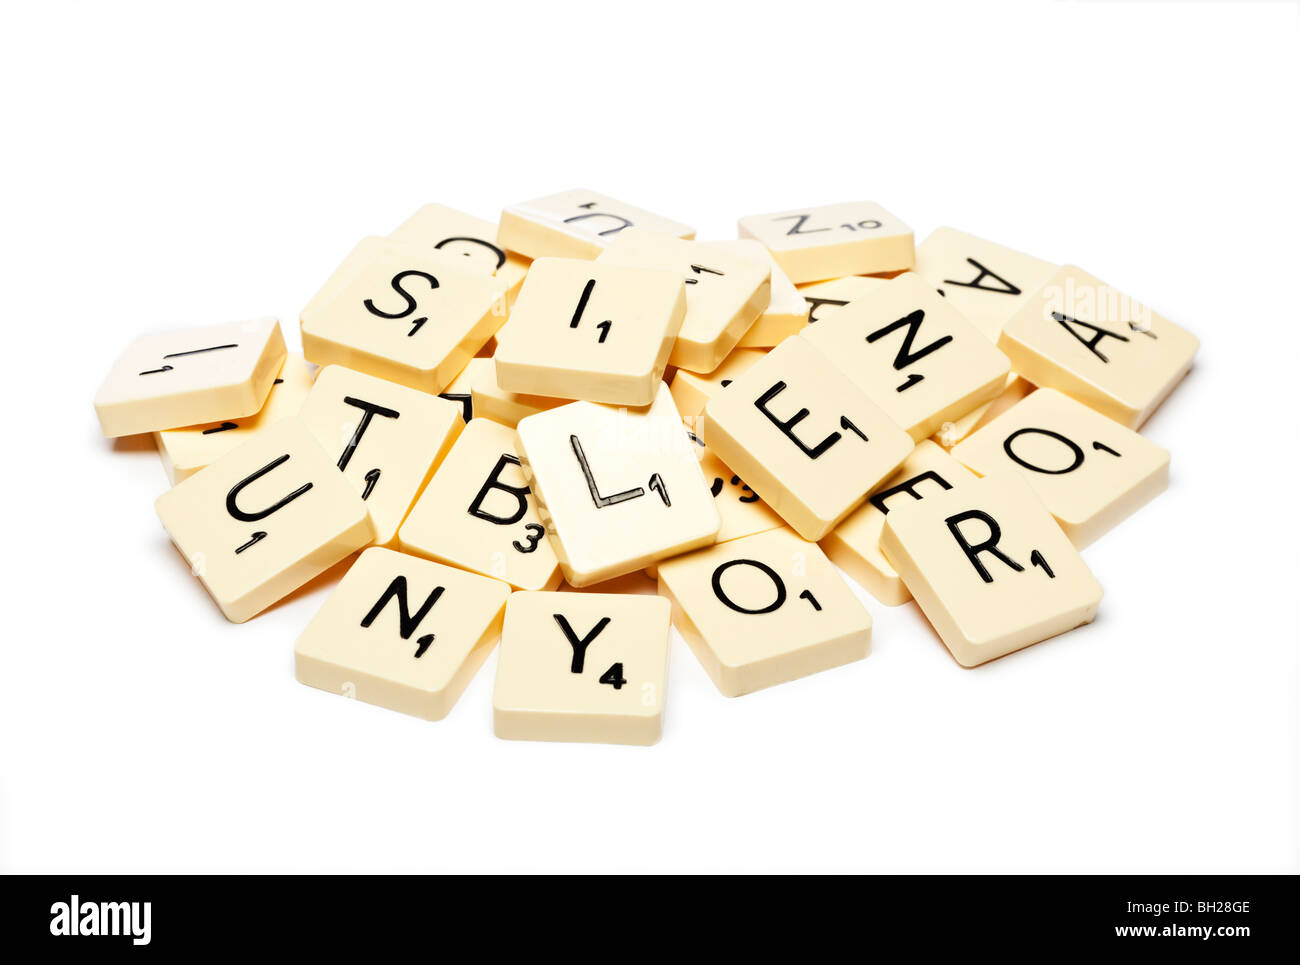 Mattonelle di Scrabble Foto Stock